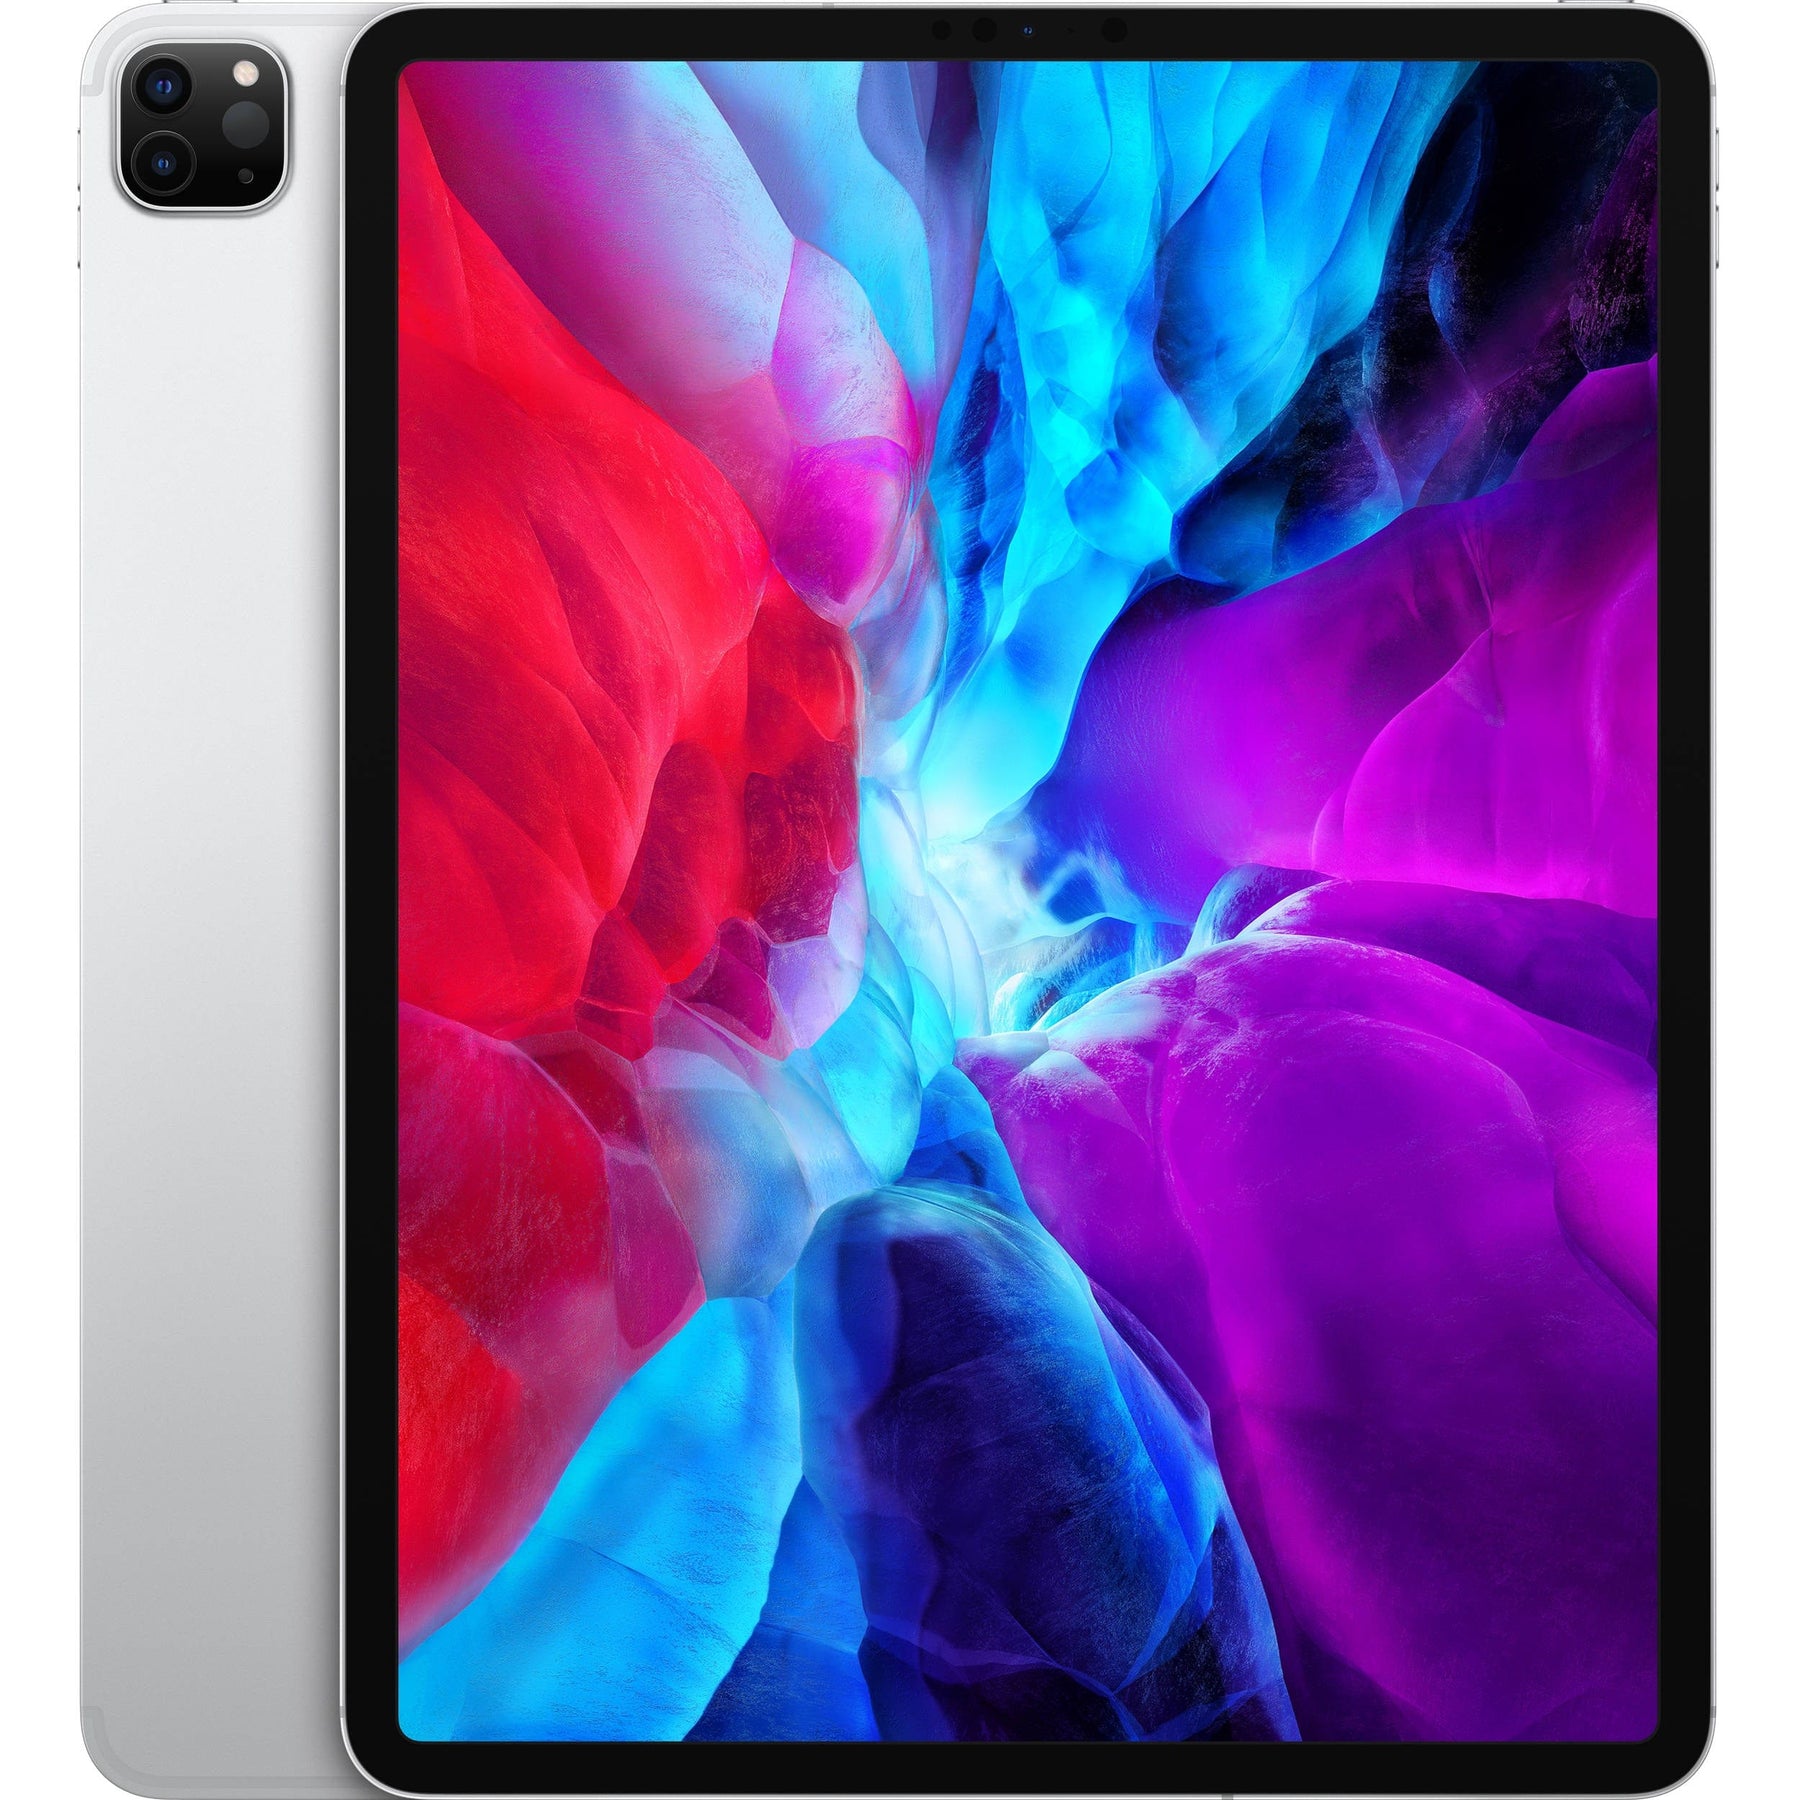 Apple iPad Pro 12.9-inch (4th Gen, Wi-Fi) A2229 – Hoxton Macs